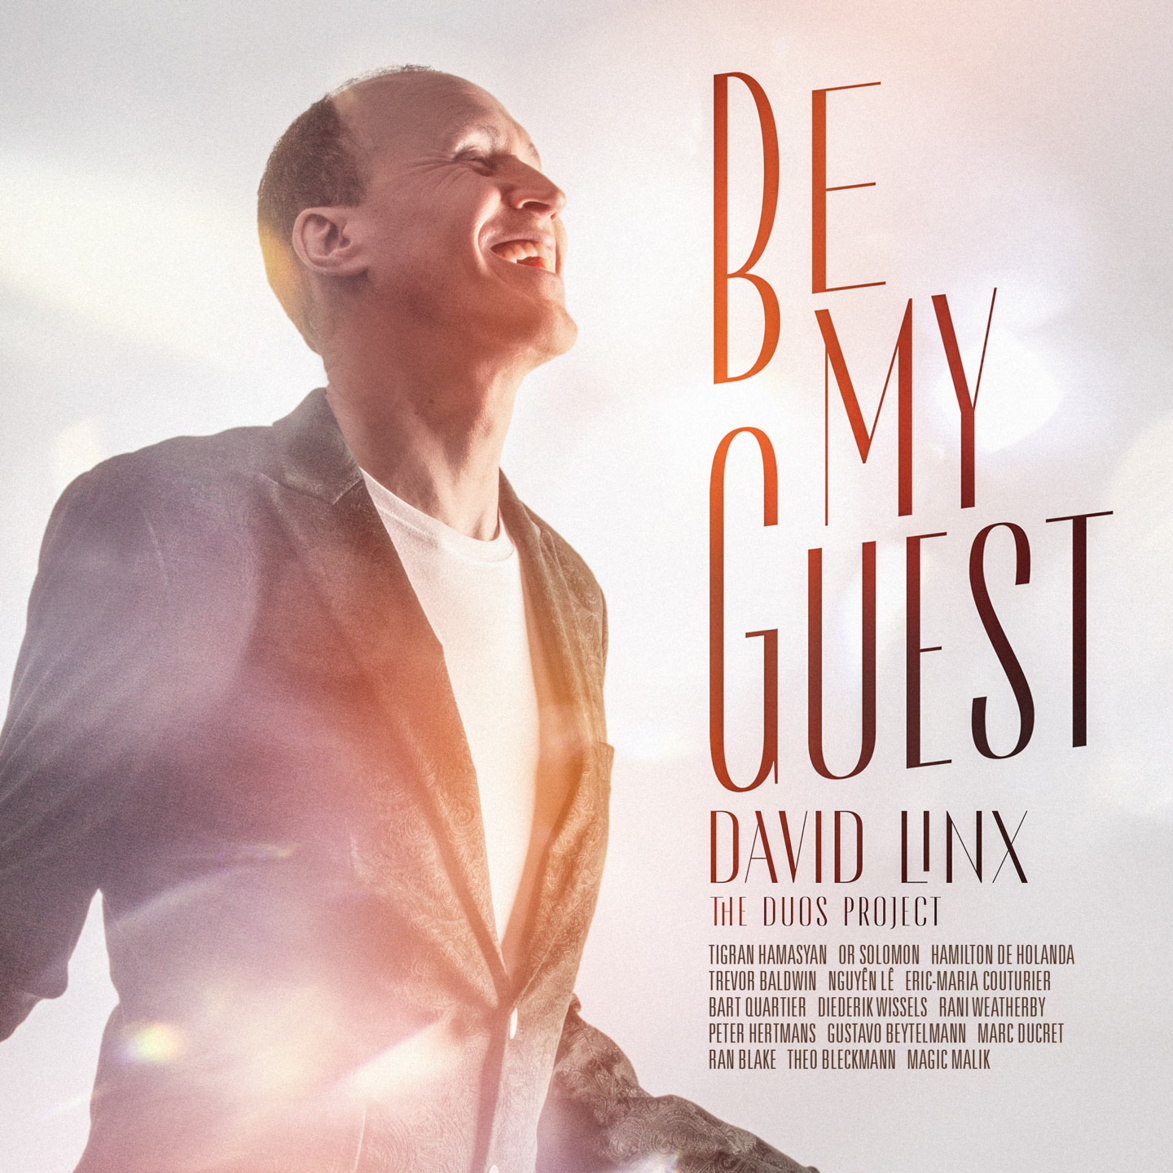 David Linx invite du beau monde avec l'album Be My Guest, The Duos project